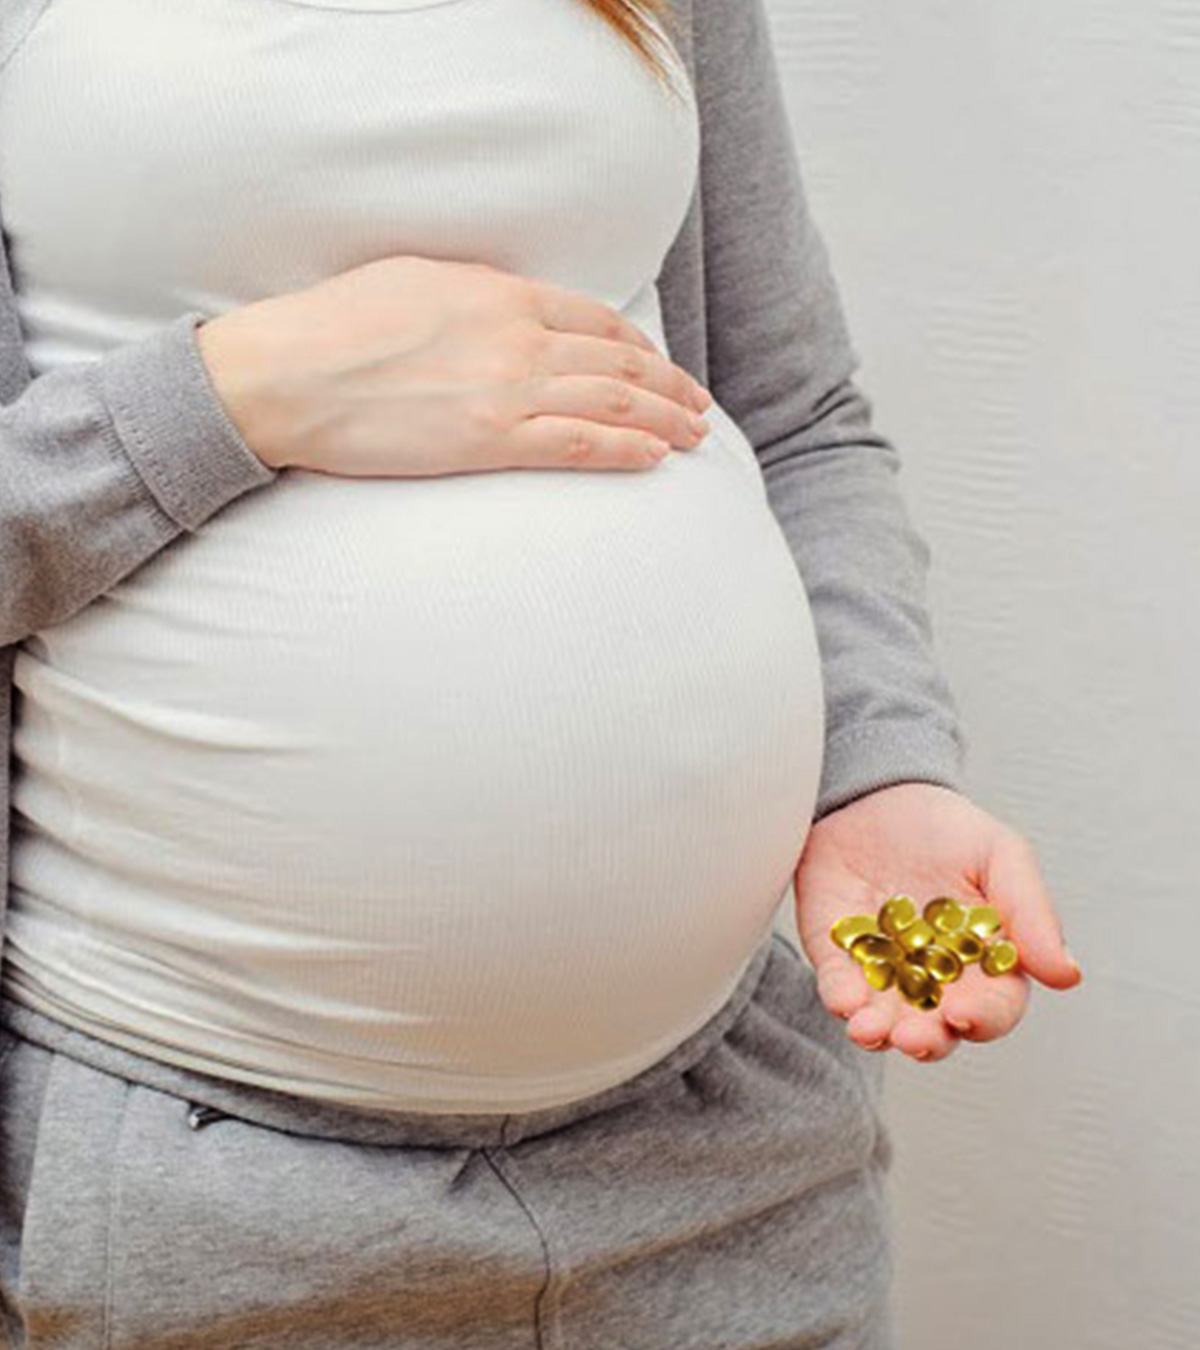 Evening Primrose Oil During Pregnancy: Safety, Benefits & Risks